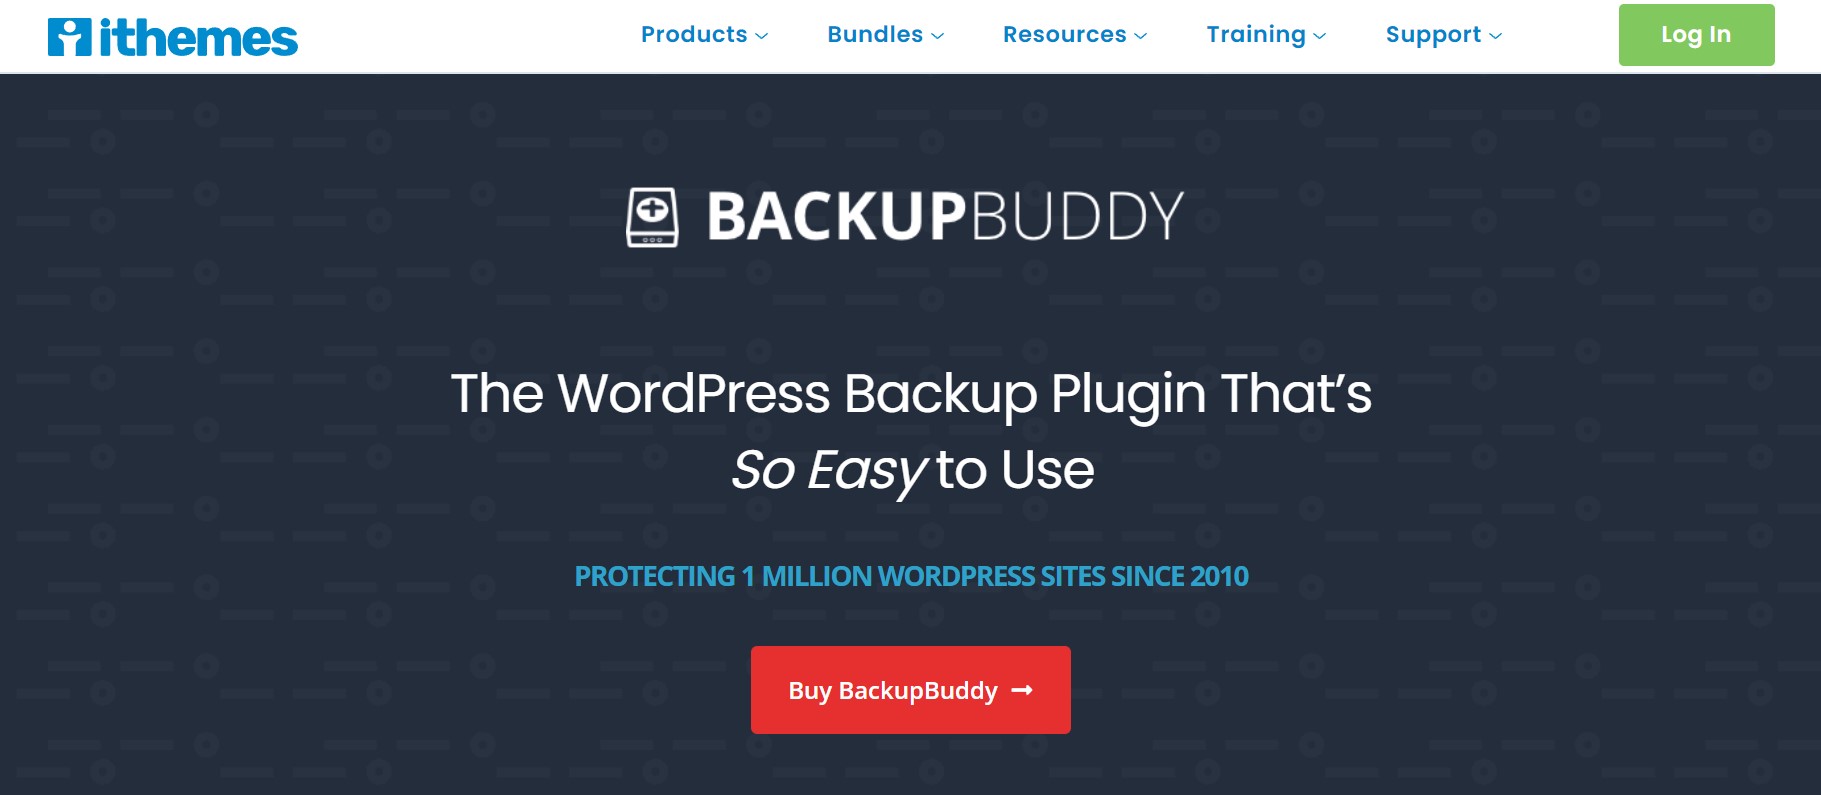 Backupbuddy wordpress backup plugin